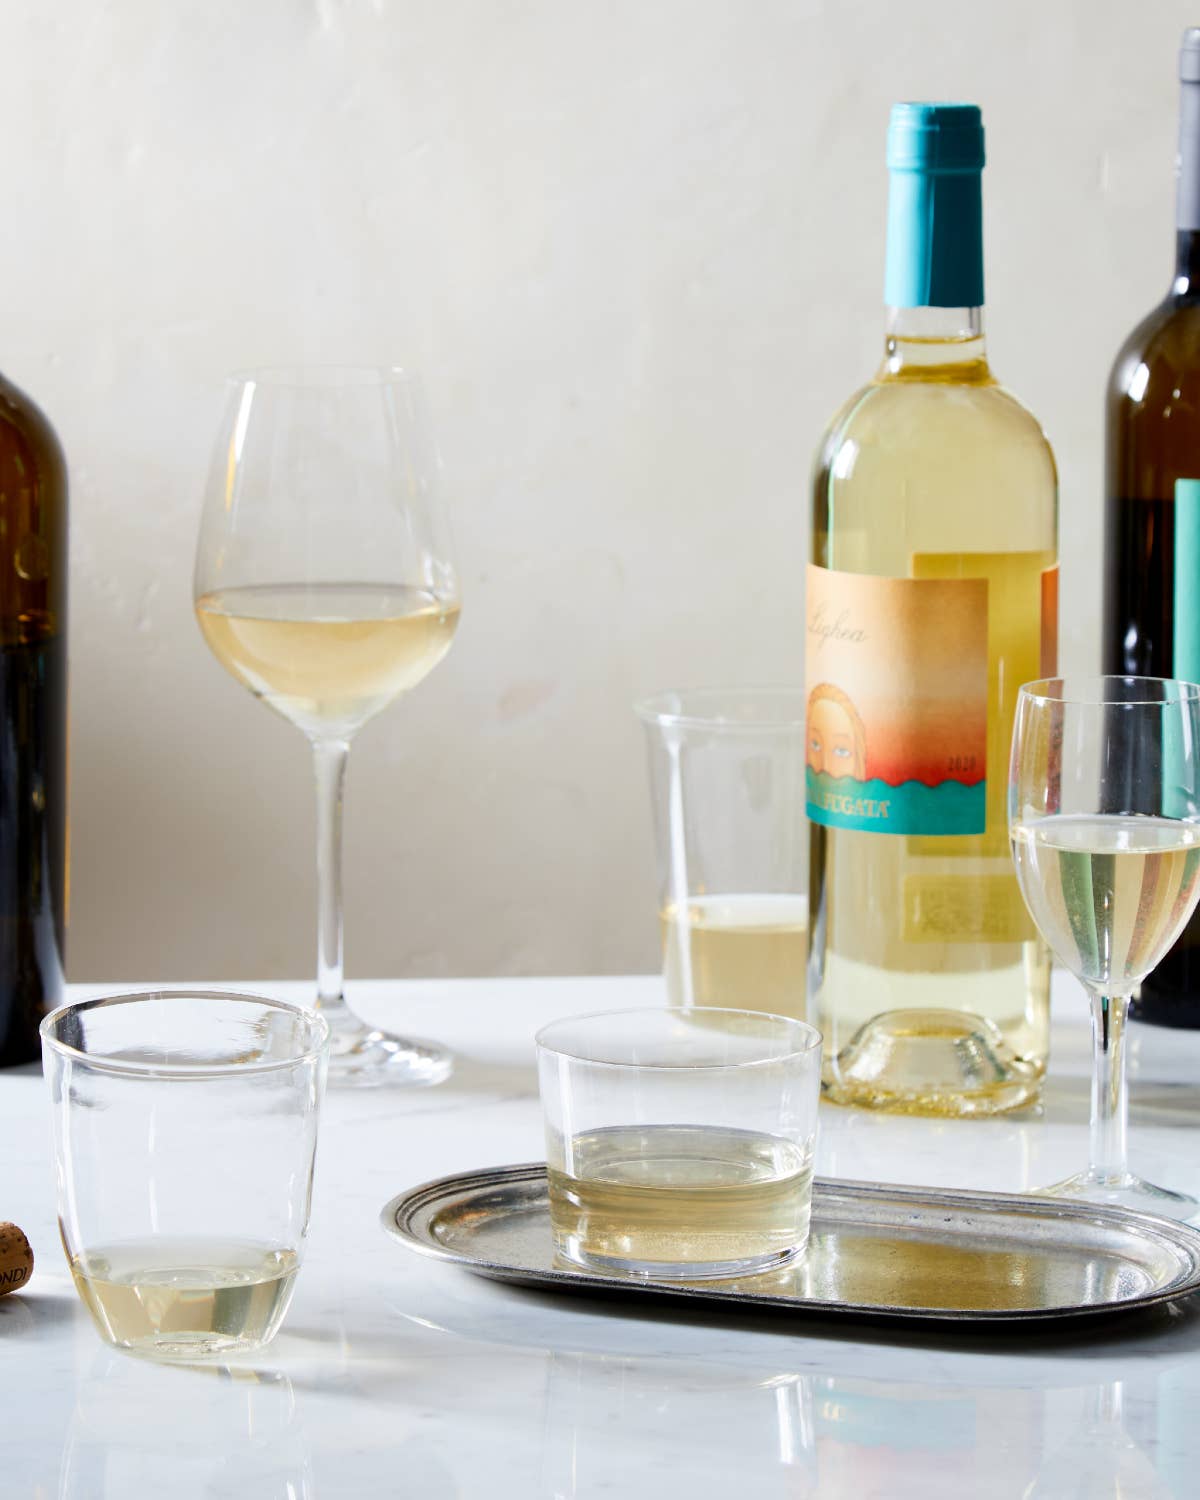 Zibibbo Wine Bottles and Glasses